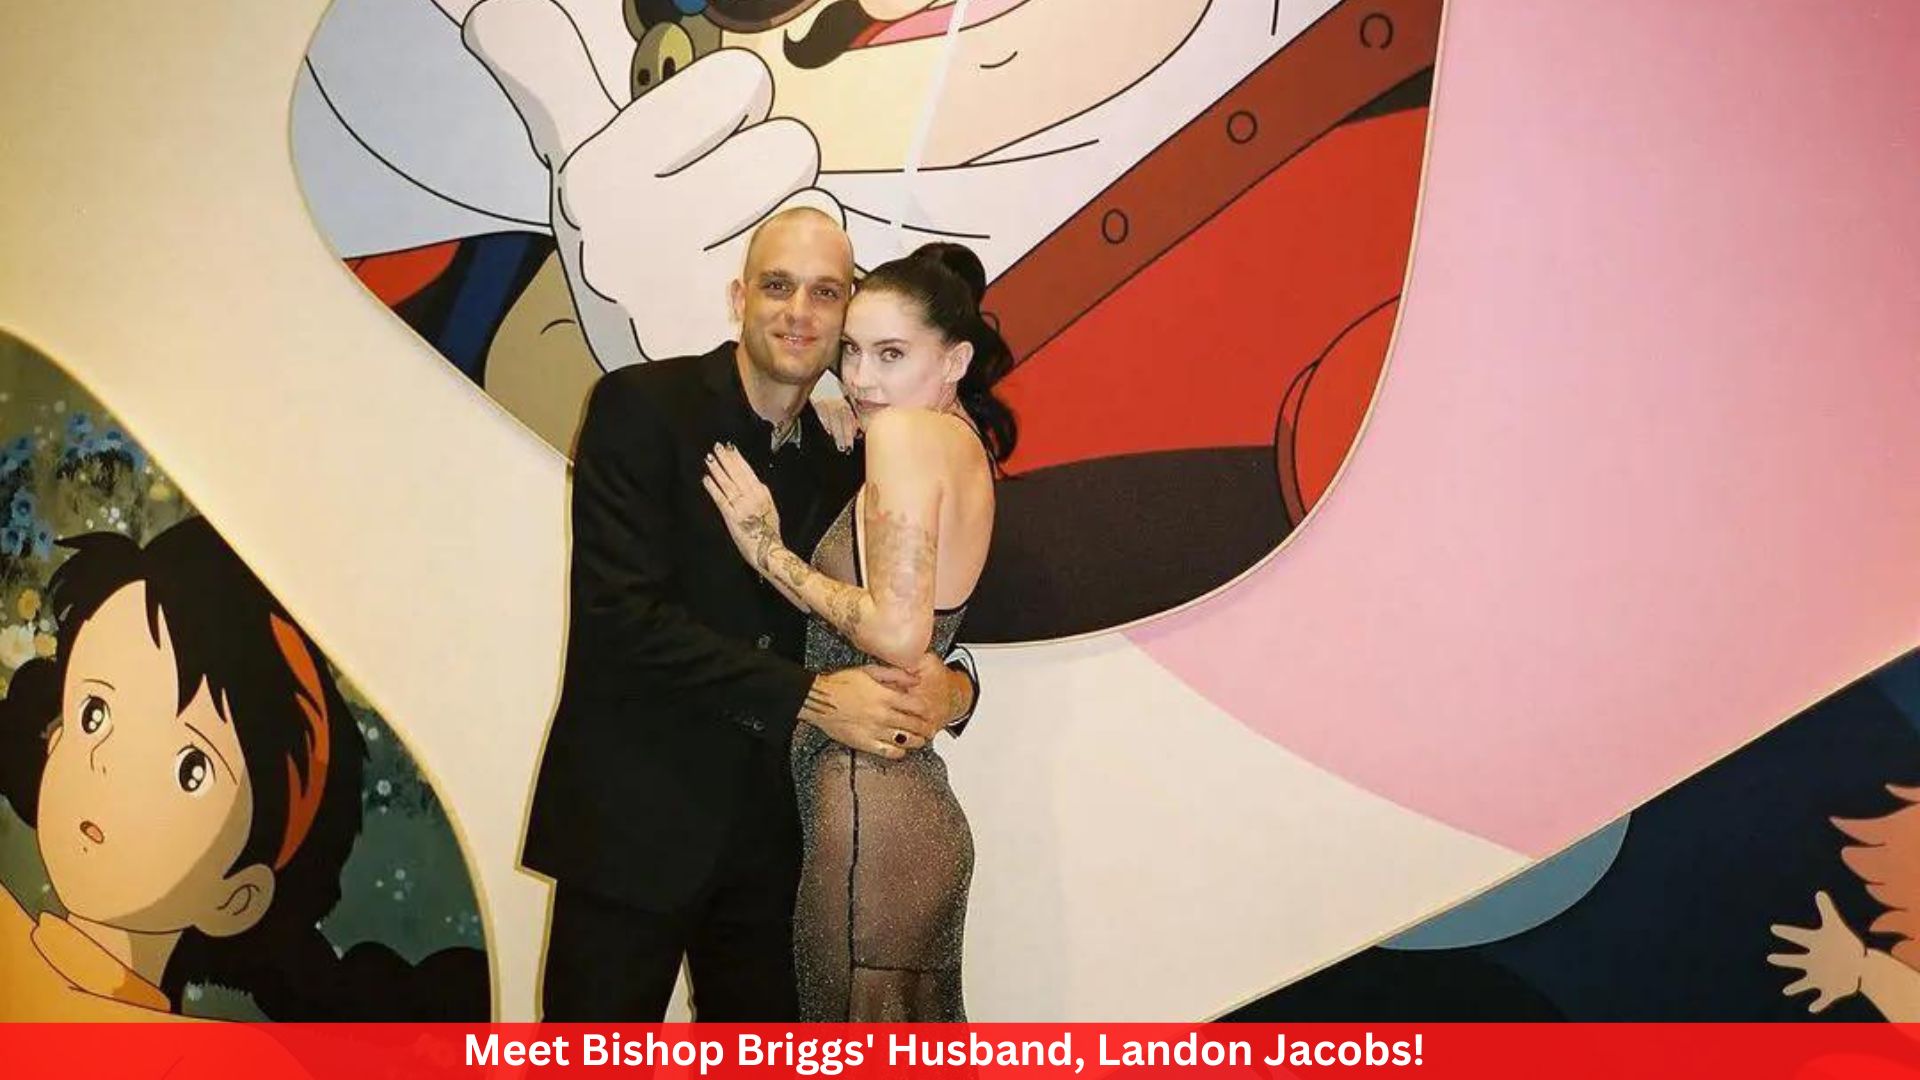 Meet Bishop Briggs' Husband, Landon Jacobs!